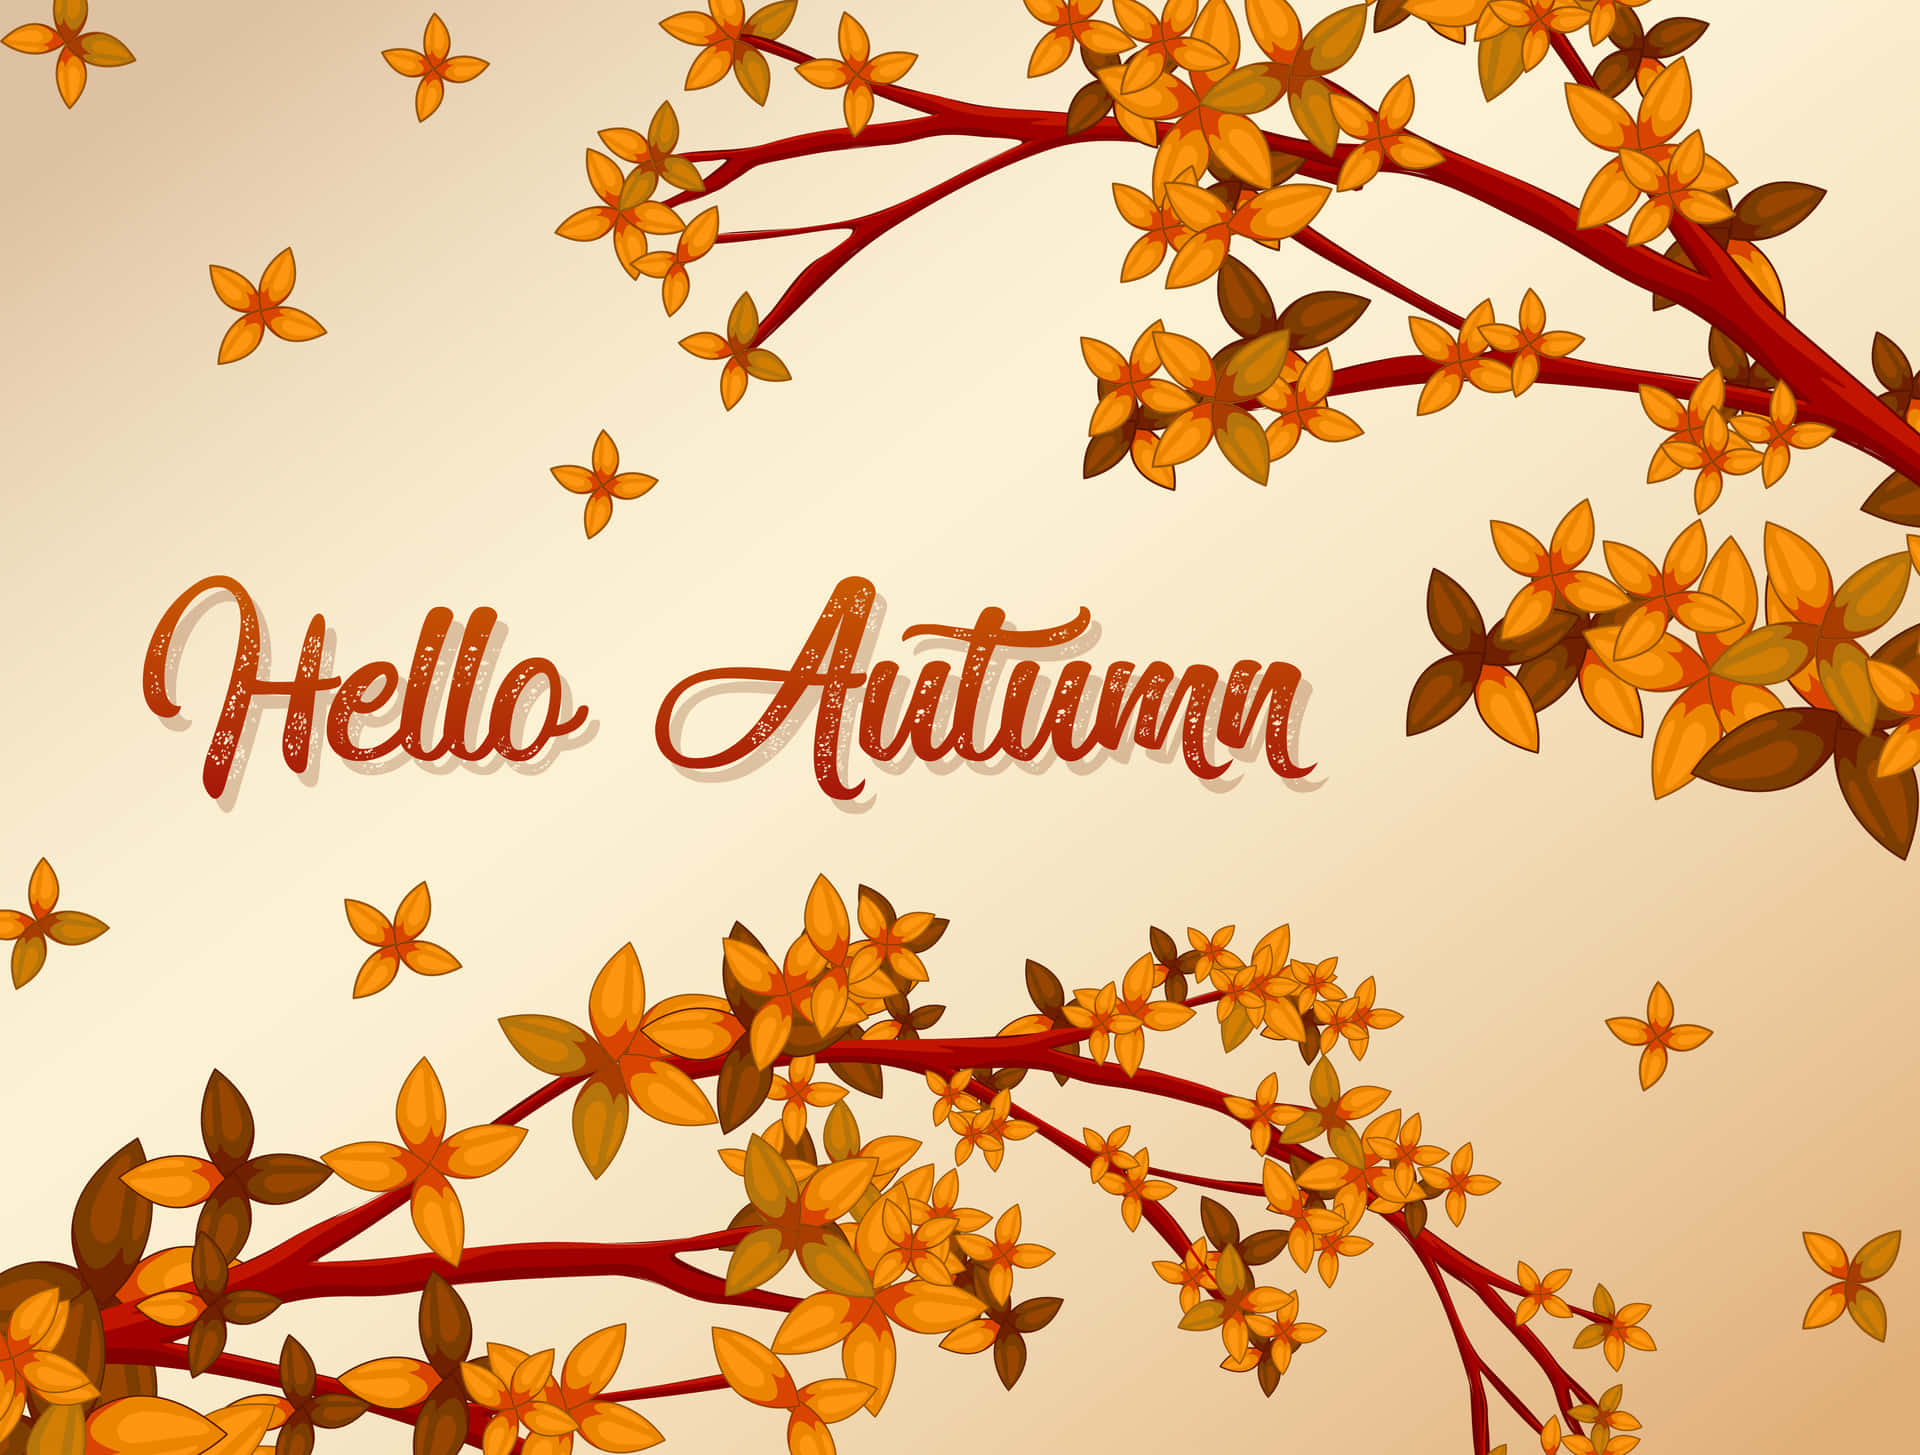 Let the autumn show its vibrancy!